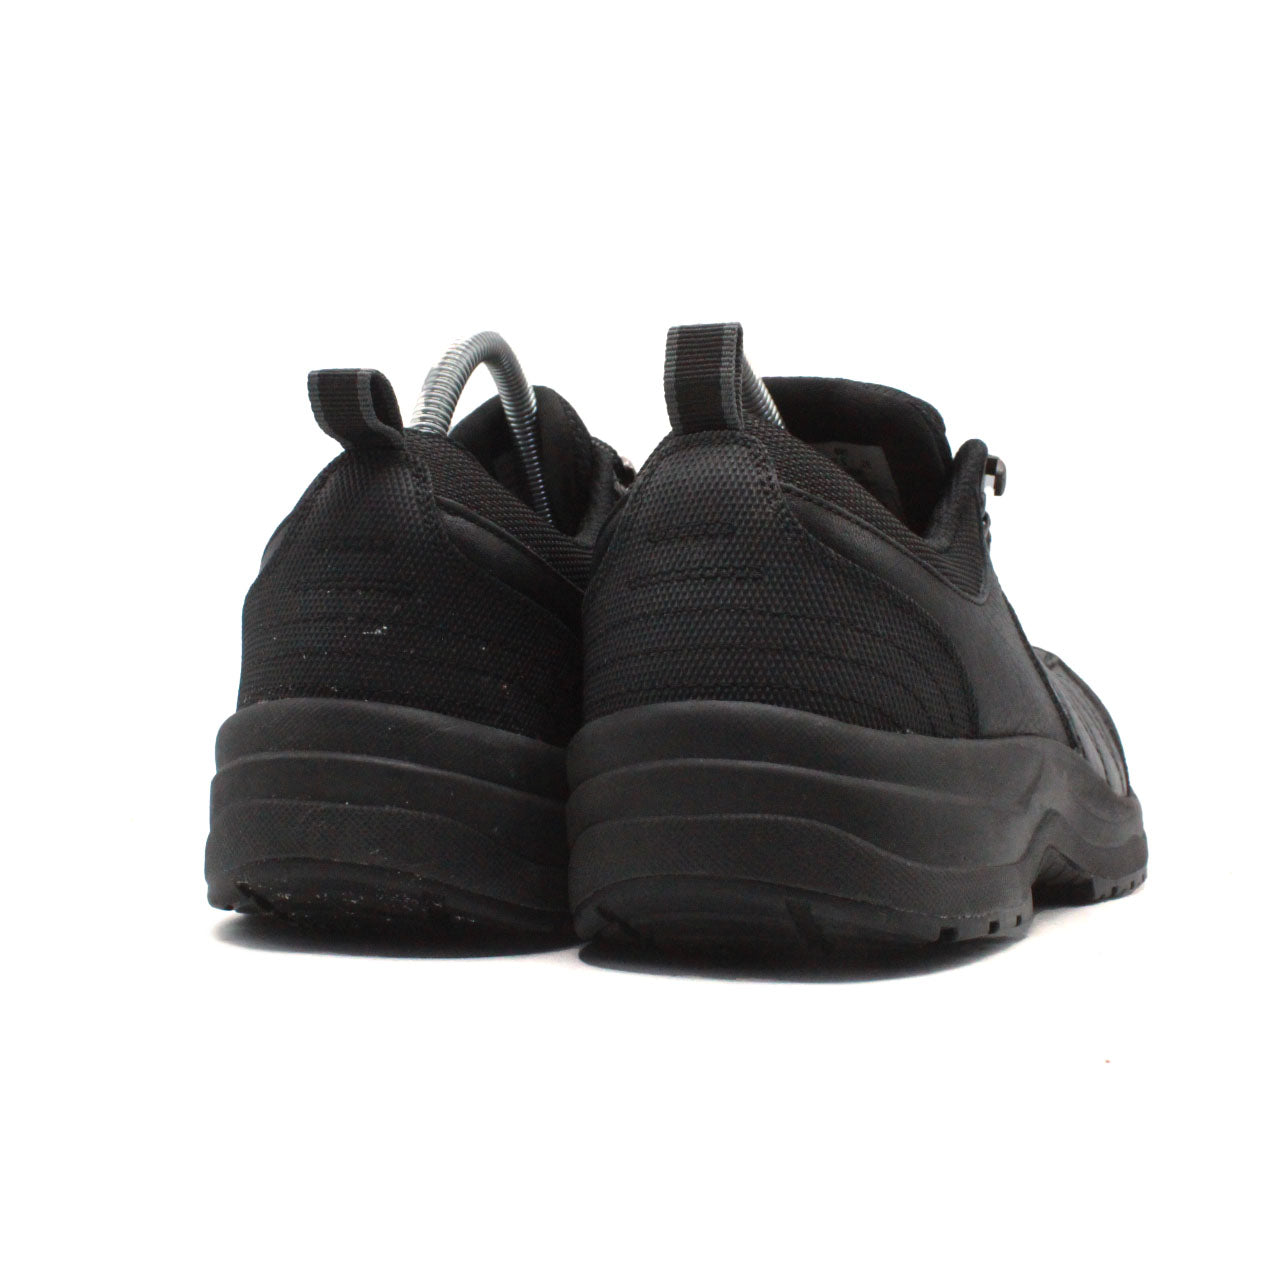 ORTHOFEET Dolomite Work Shoes - Black